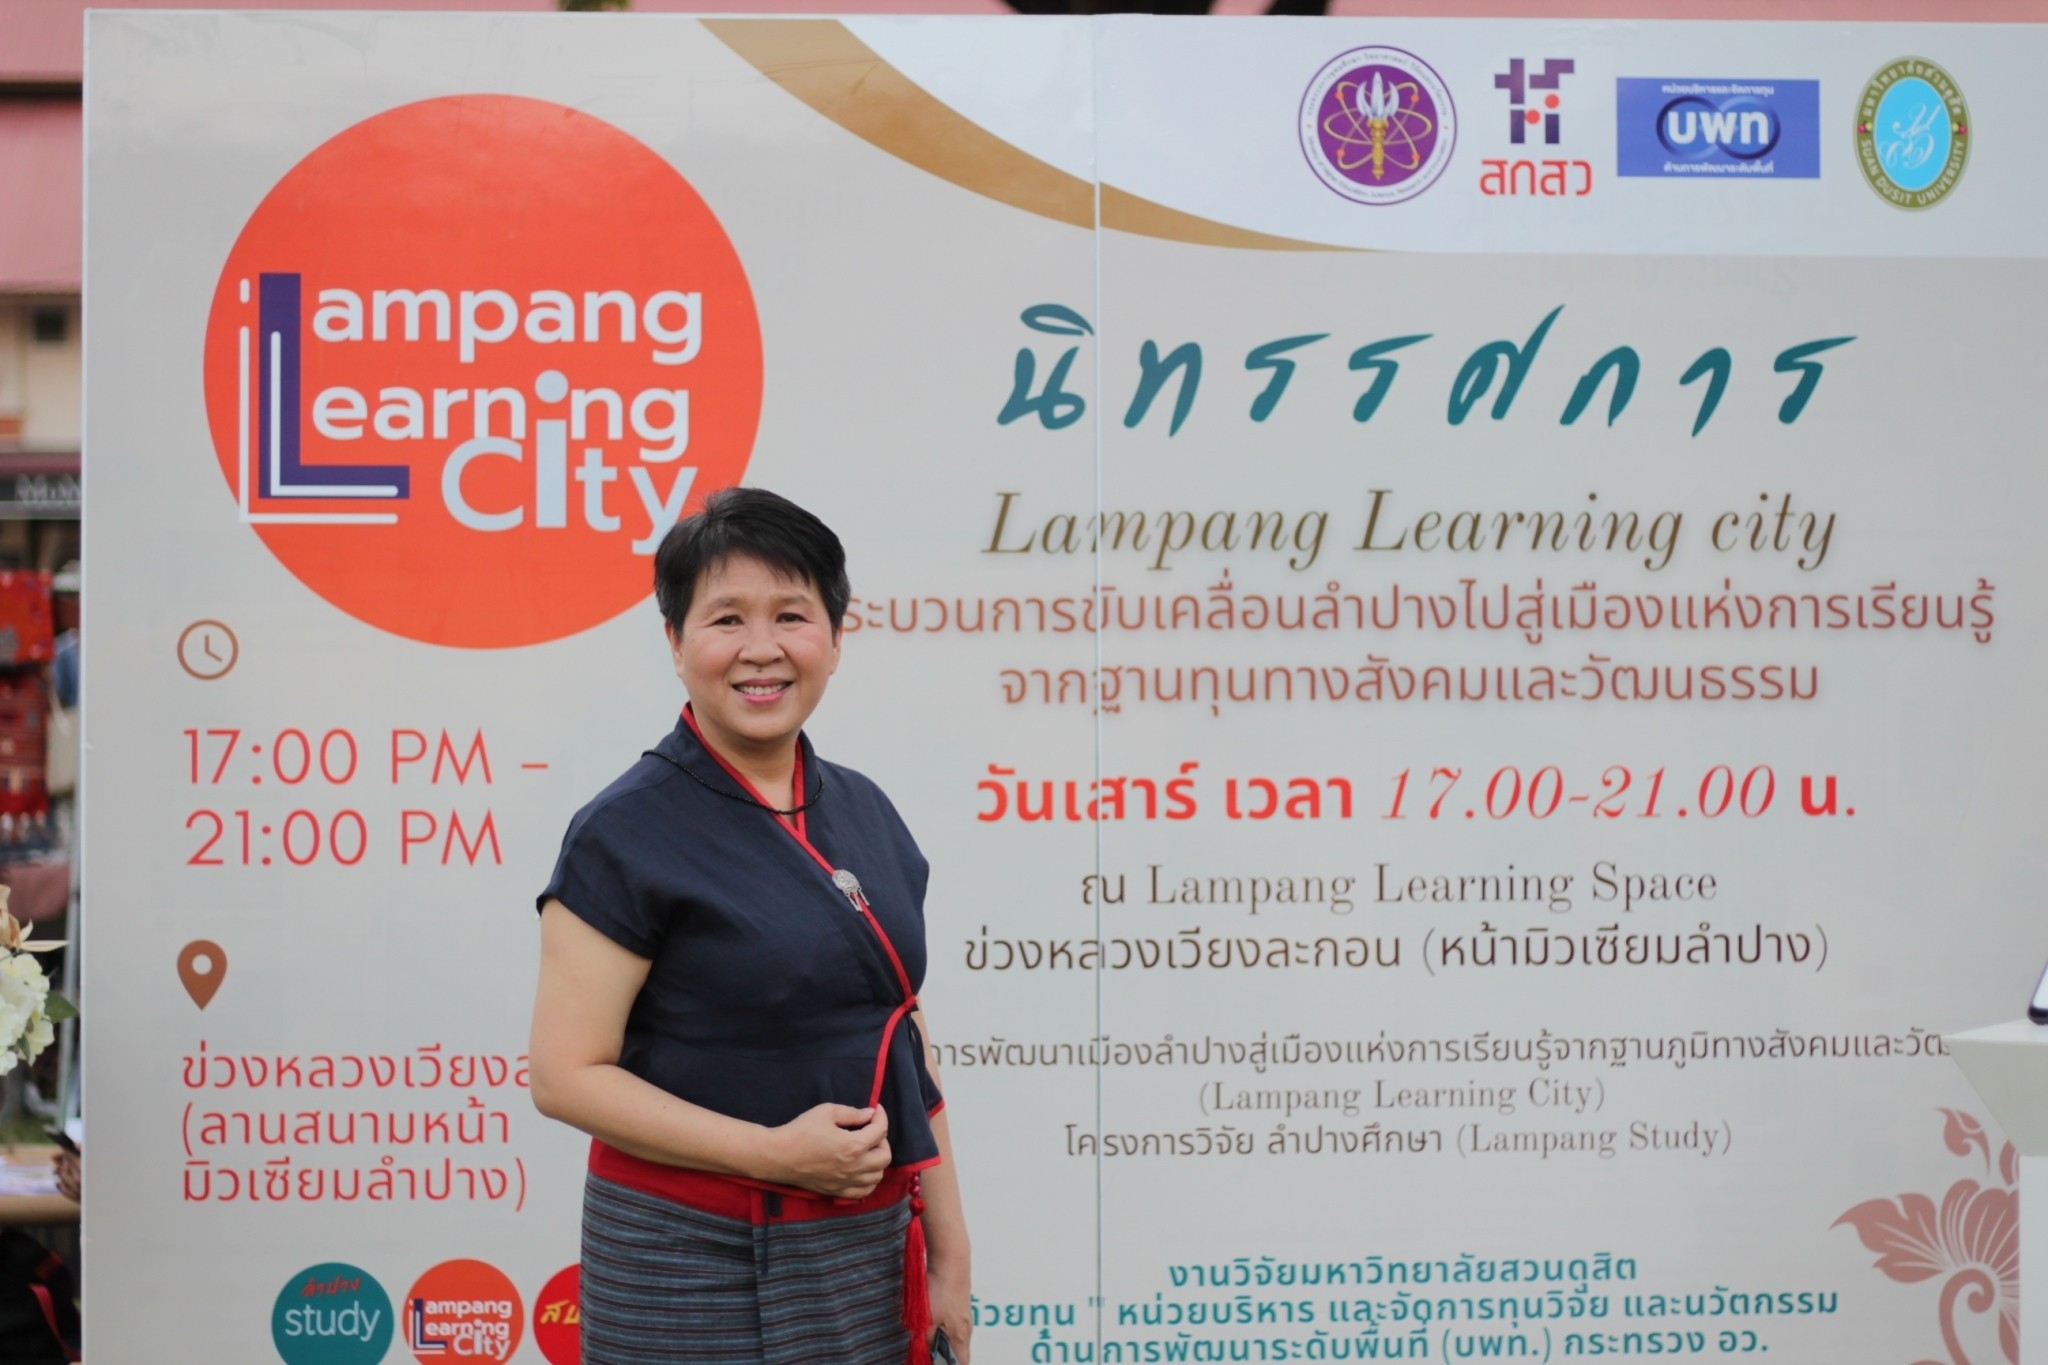 นิทรรศการหมุนเวียน และ กิจกรรมส่งเสริมการเรียนรู้ Lampang Learning city